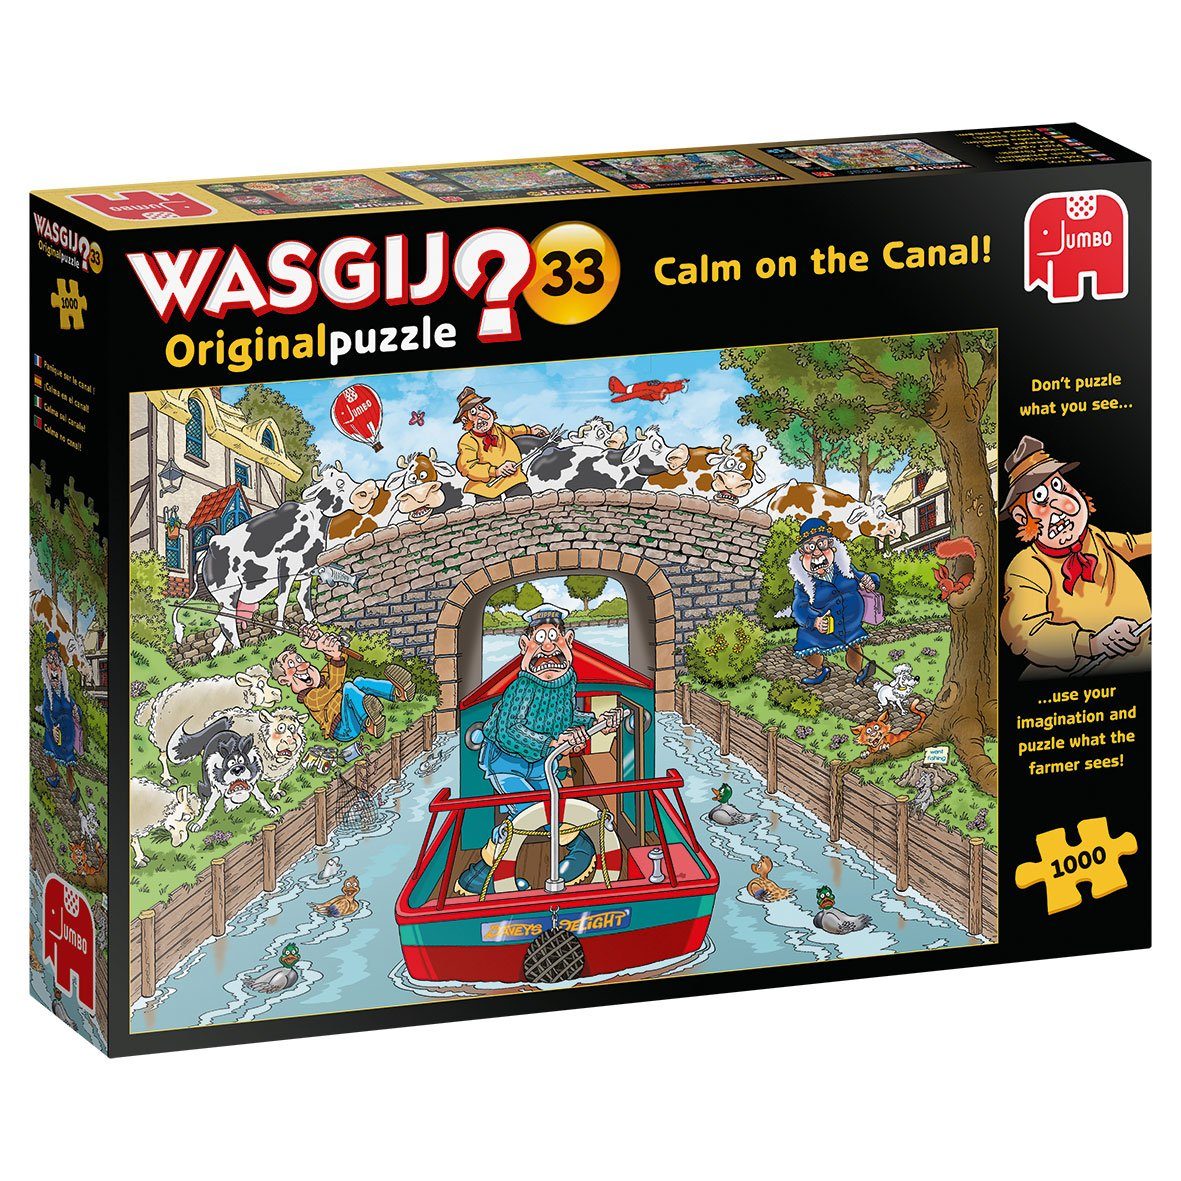 Jumbo Spiele Puzzle Wasgij Original 33 Ruhige Fahrt auf dem Kanal, 1000 Puzzleteile, Puzzeln Sie, was der Farmer sieht.